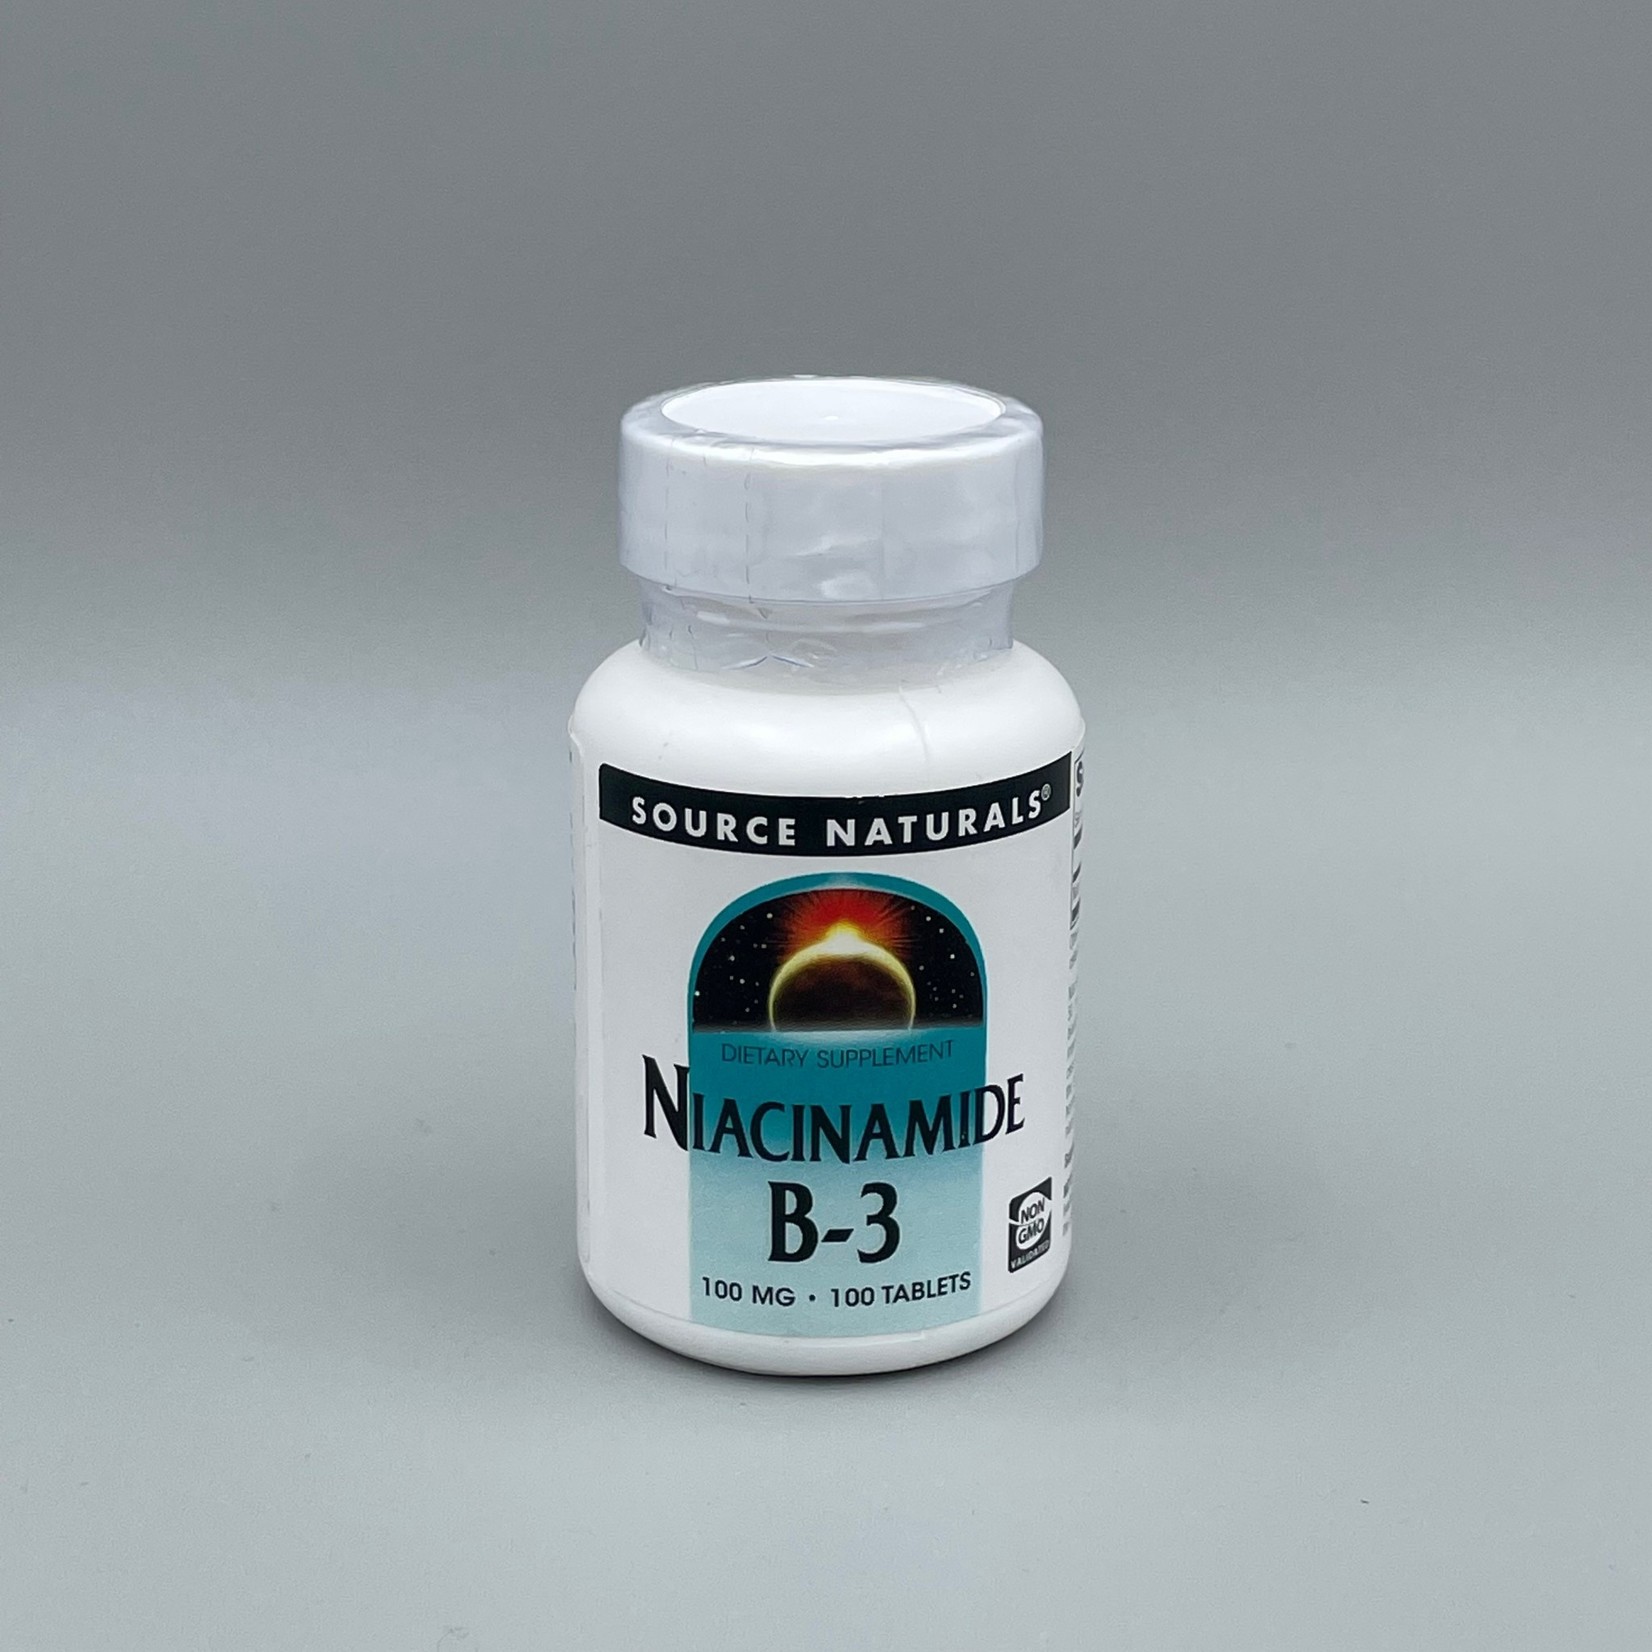 Source Naturals Vitamin B-3 (Niacinamide) - 100 mg, 100 Tablets